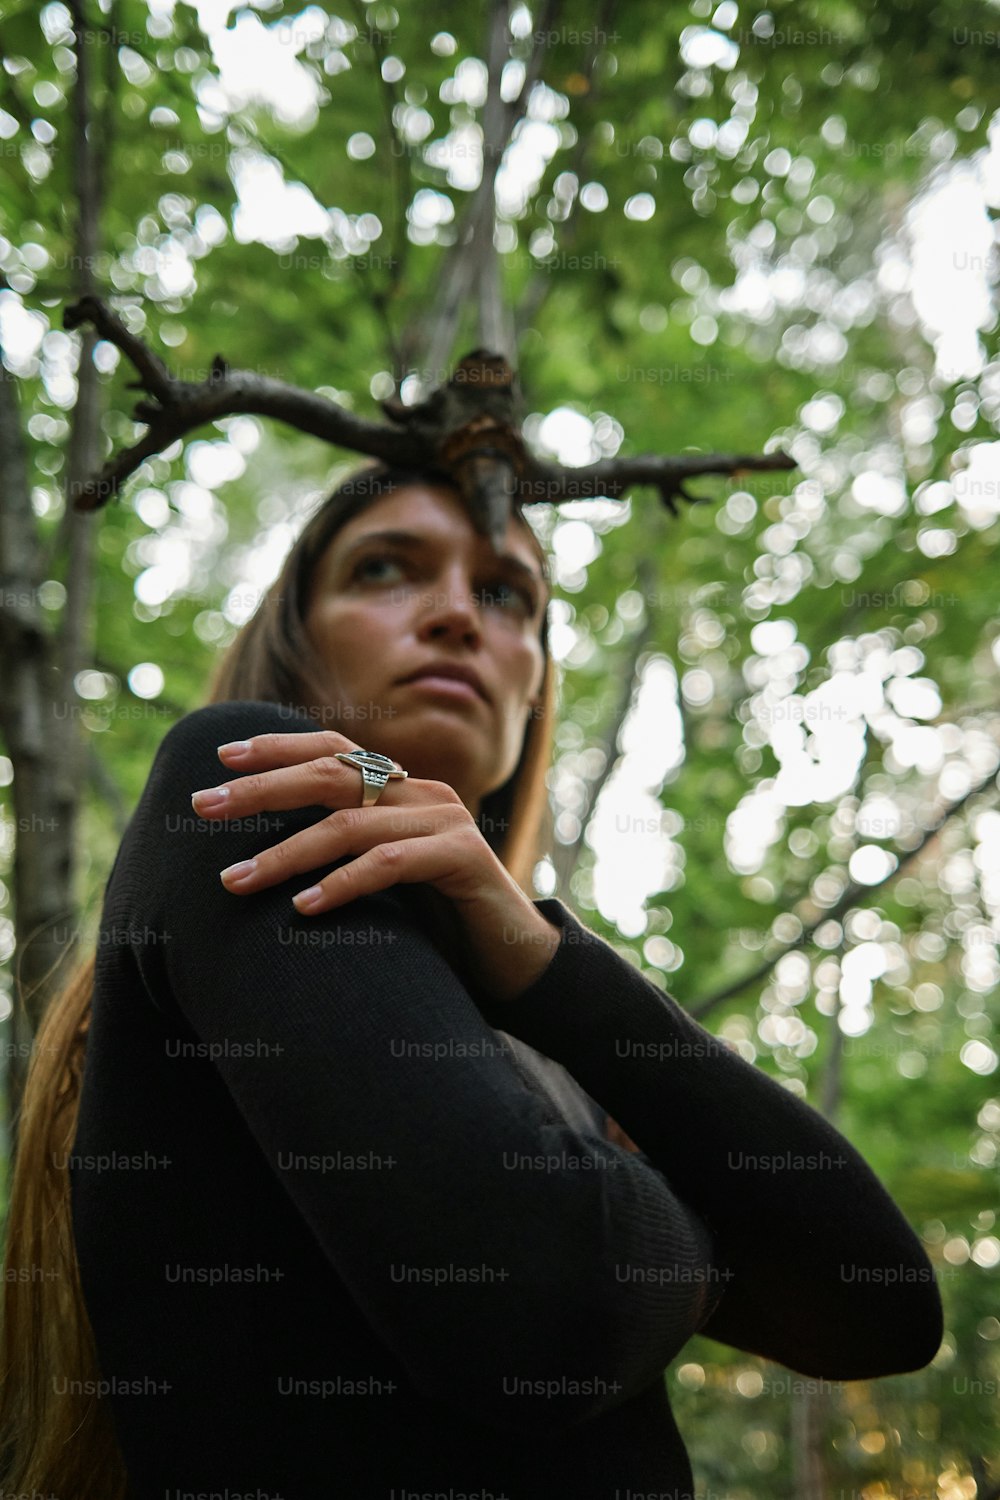 Une femme portant une bague debout dans une forêt